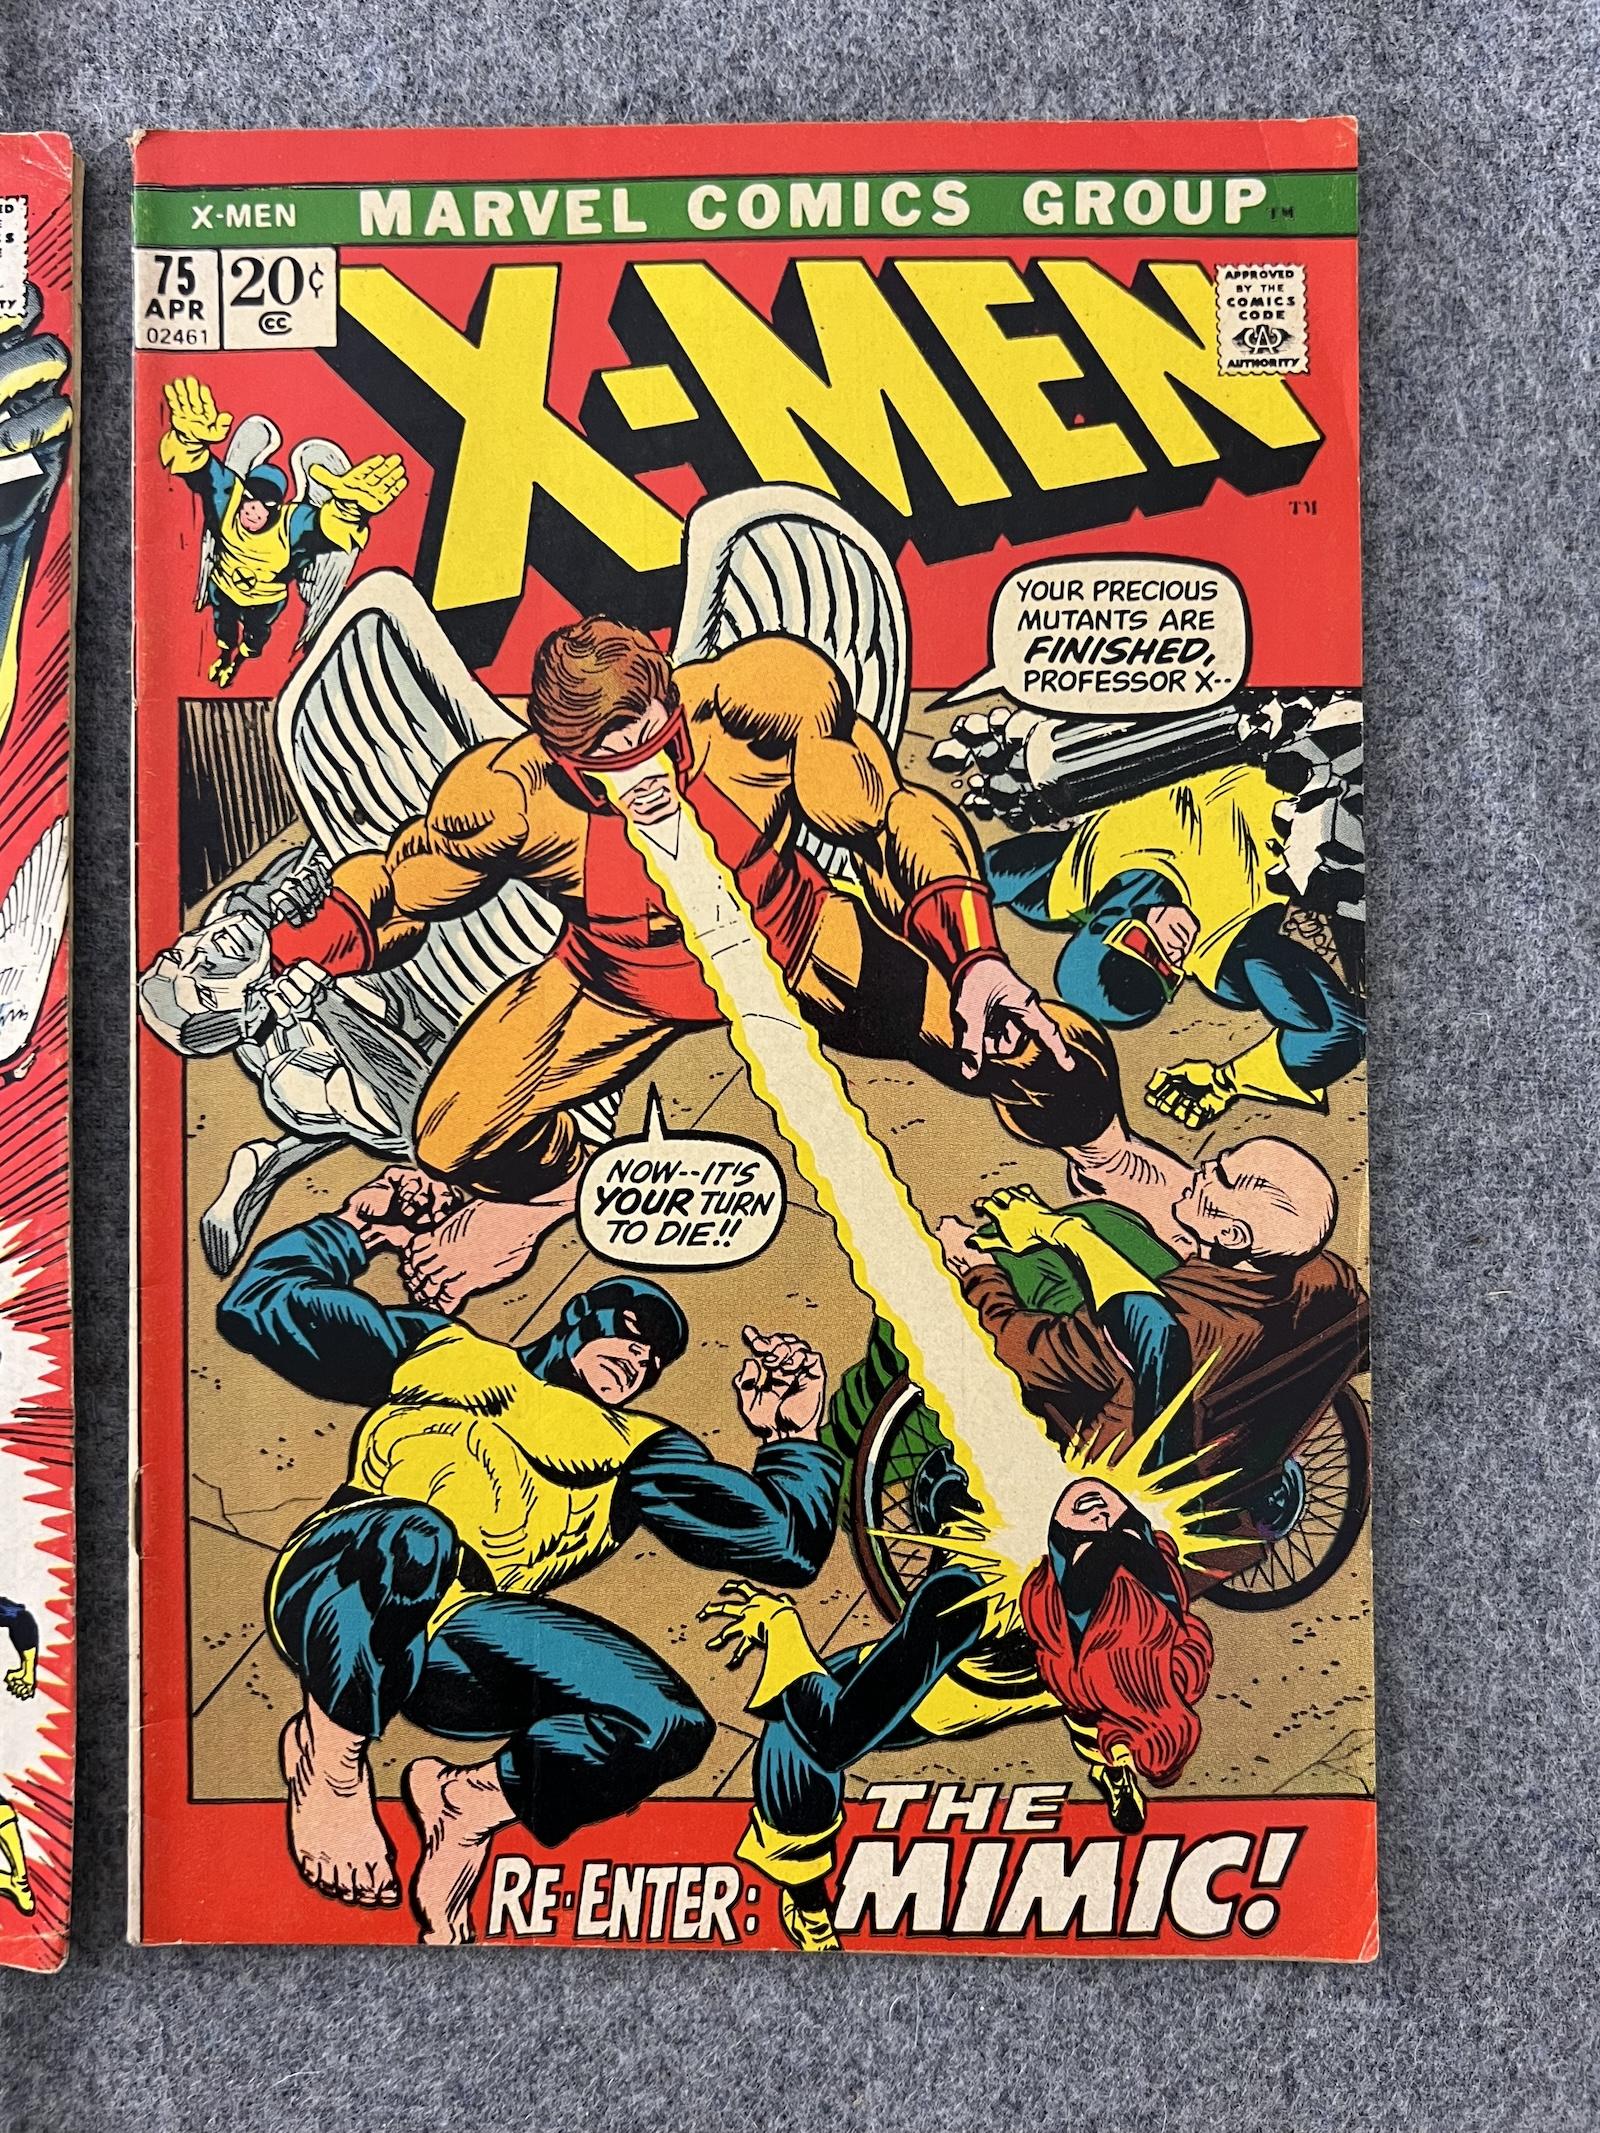 VINTAGE COMIC BOOK COLLECTION LOT X-Men 75 56